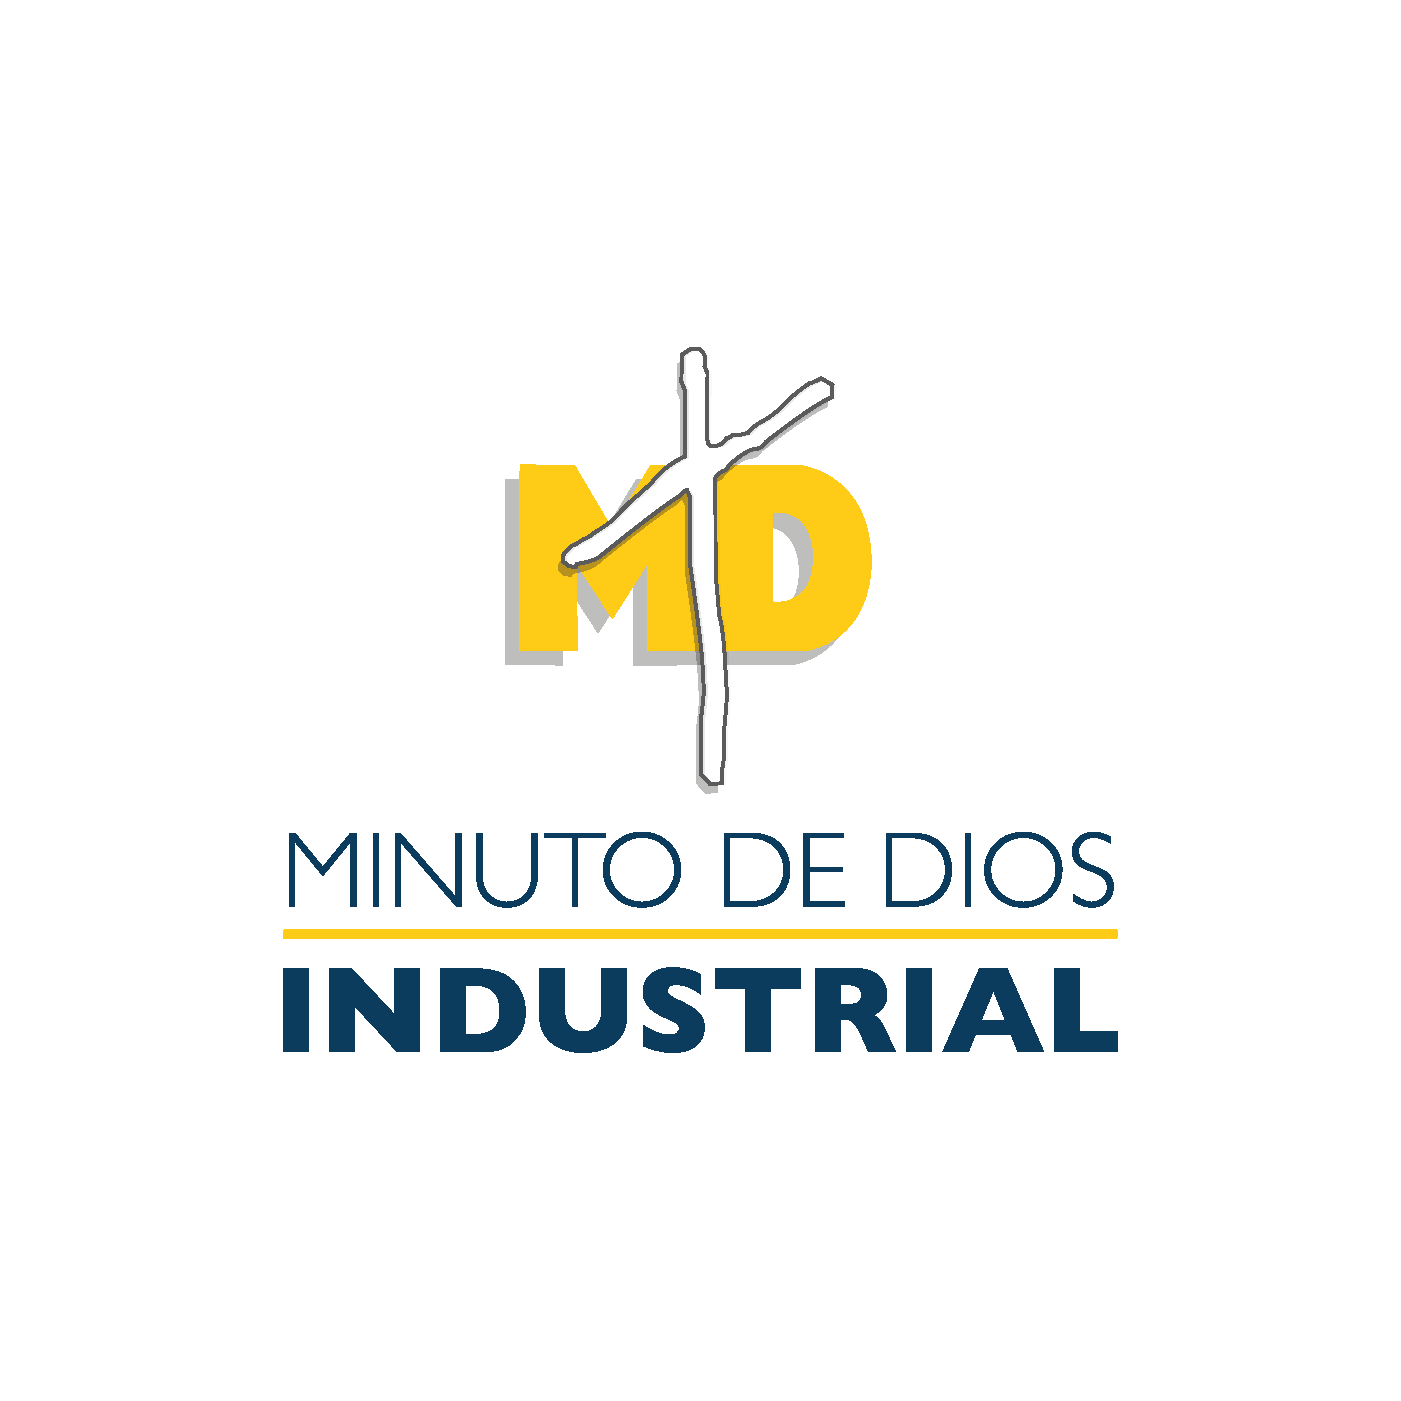 MD Industrial - Final-22 - Minuto de Dios Industrial (1)